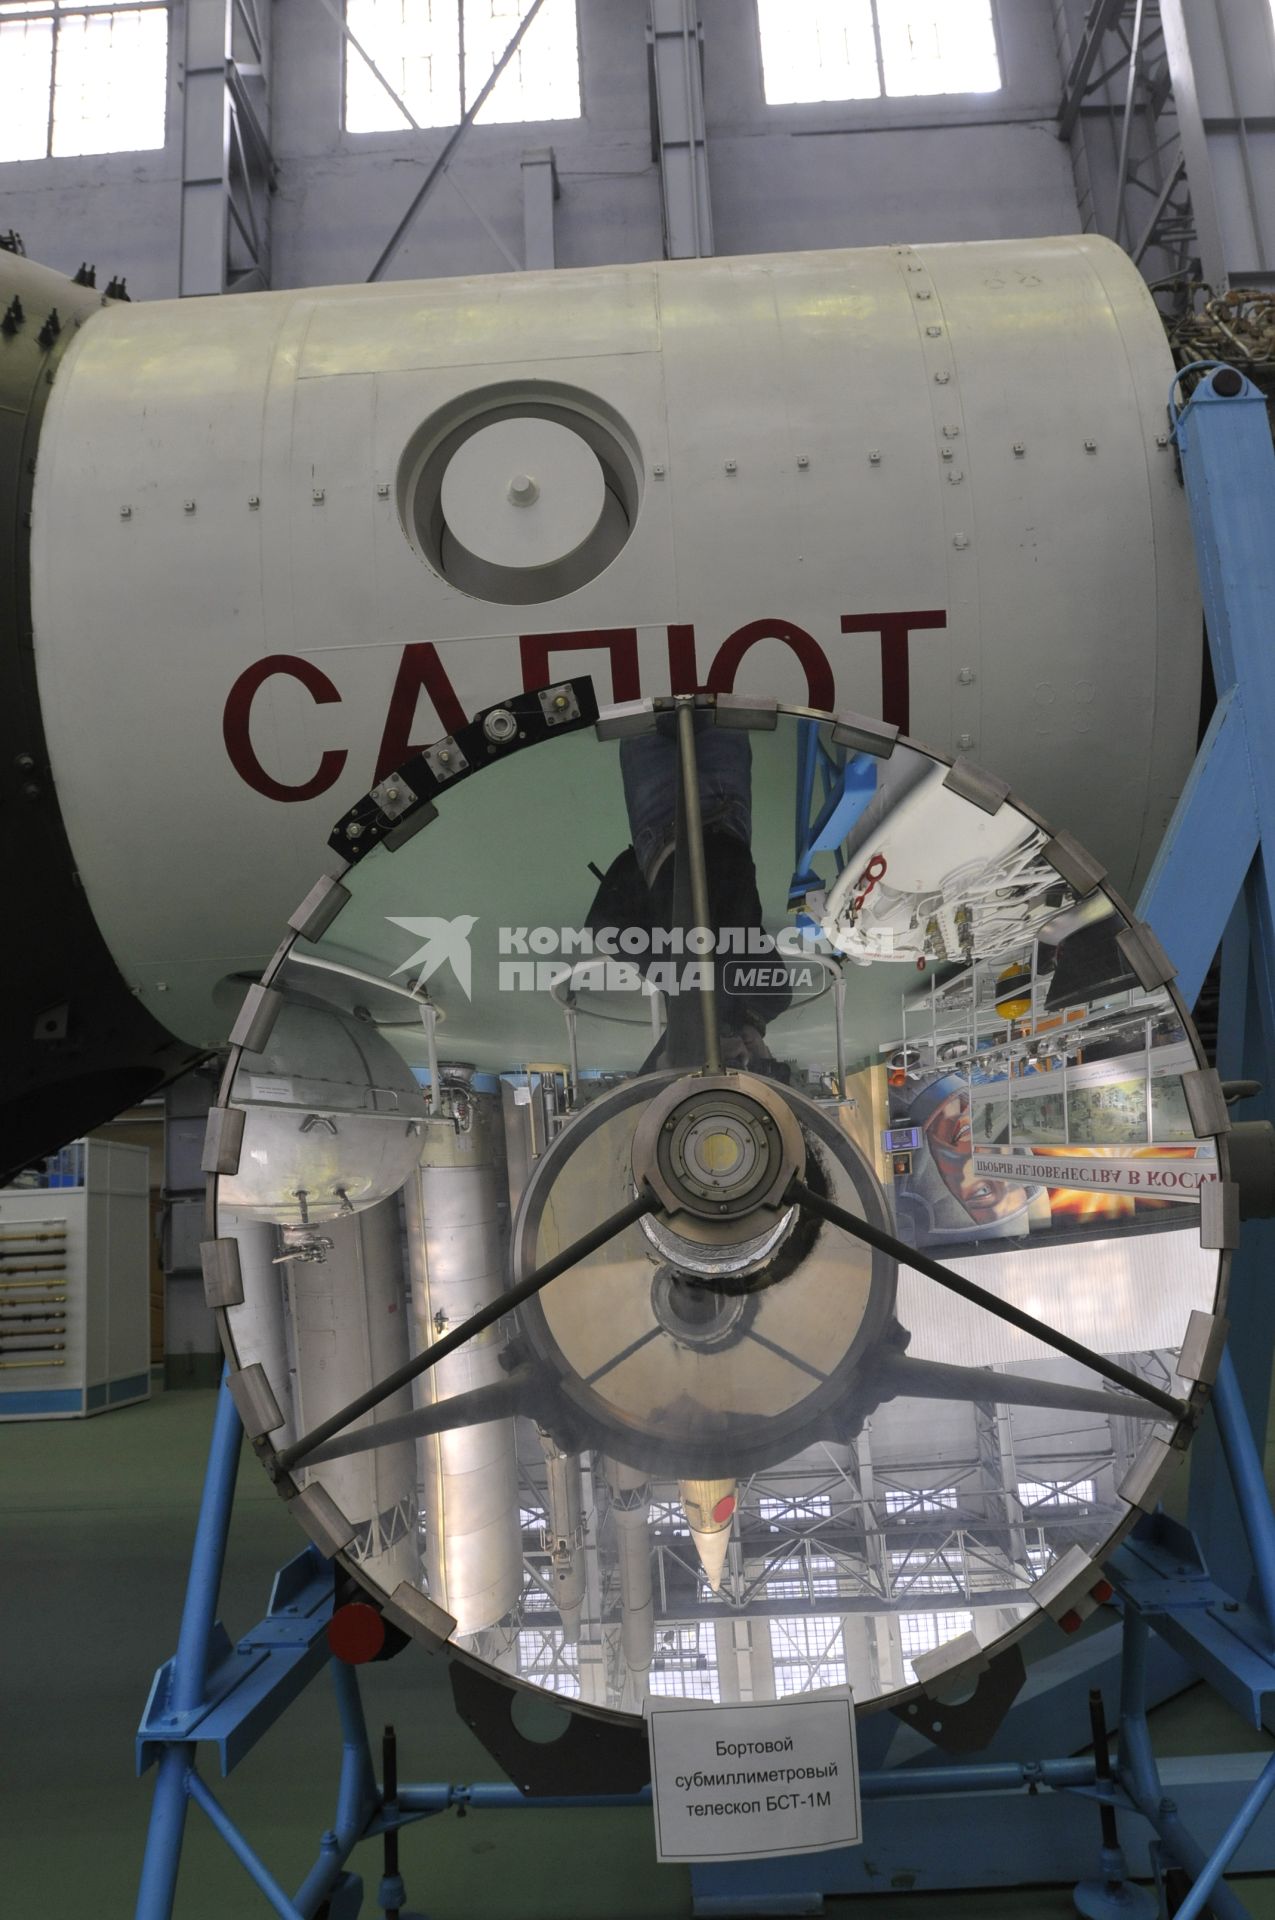 Завод РКК `Энергия` им.С.П.Королева. Музей. На снимке: бортовой субмиллиметровый телескоп БСТ-1М (на первом плане), аналог установленного на  `Салюте-6` и орбитальная станция `Салют` (на втором плане).